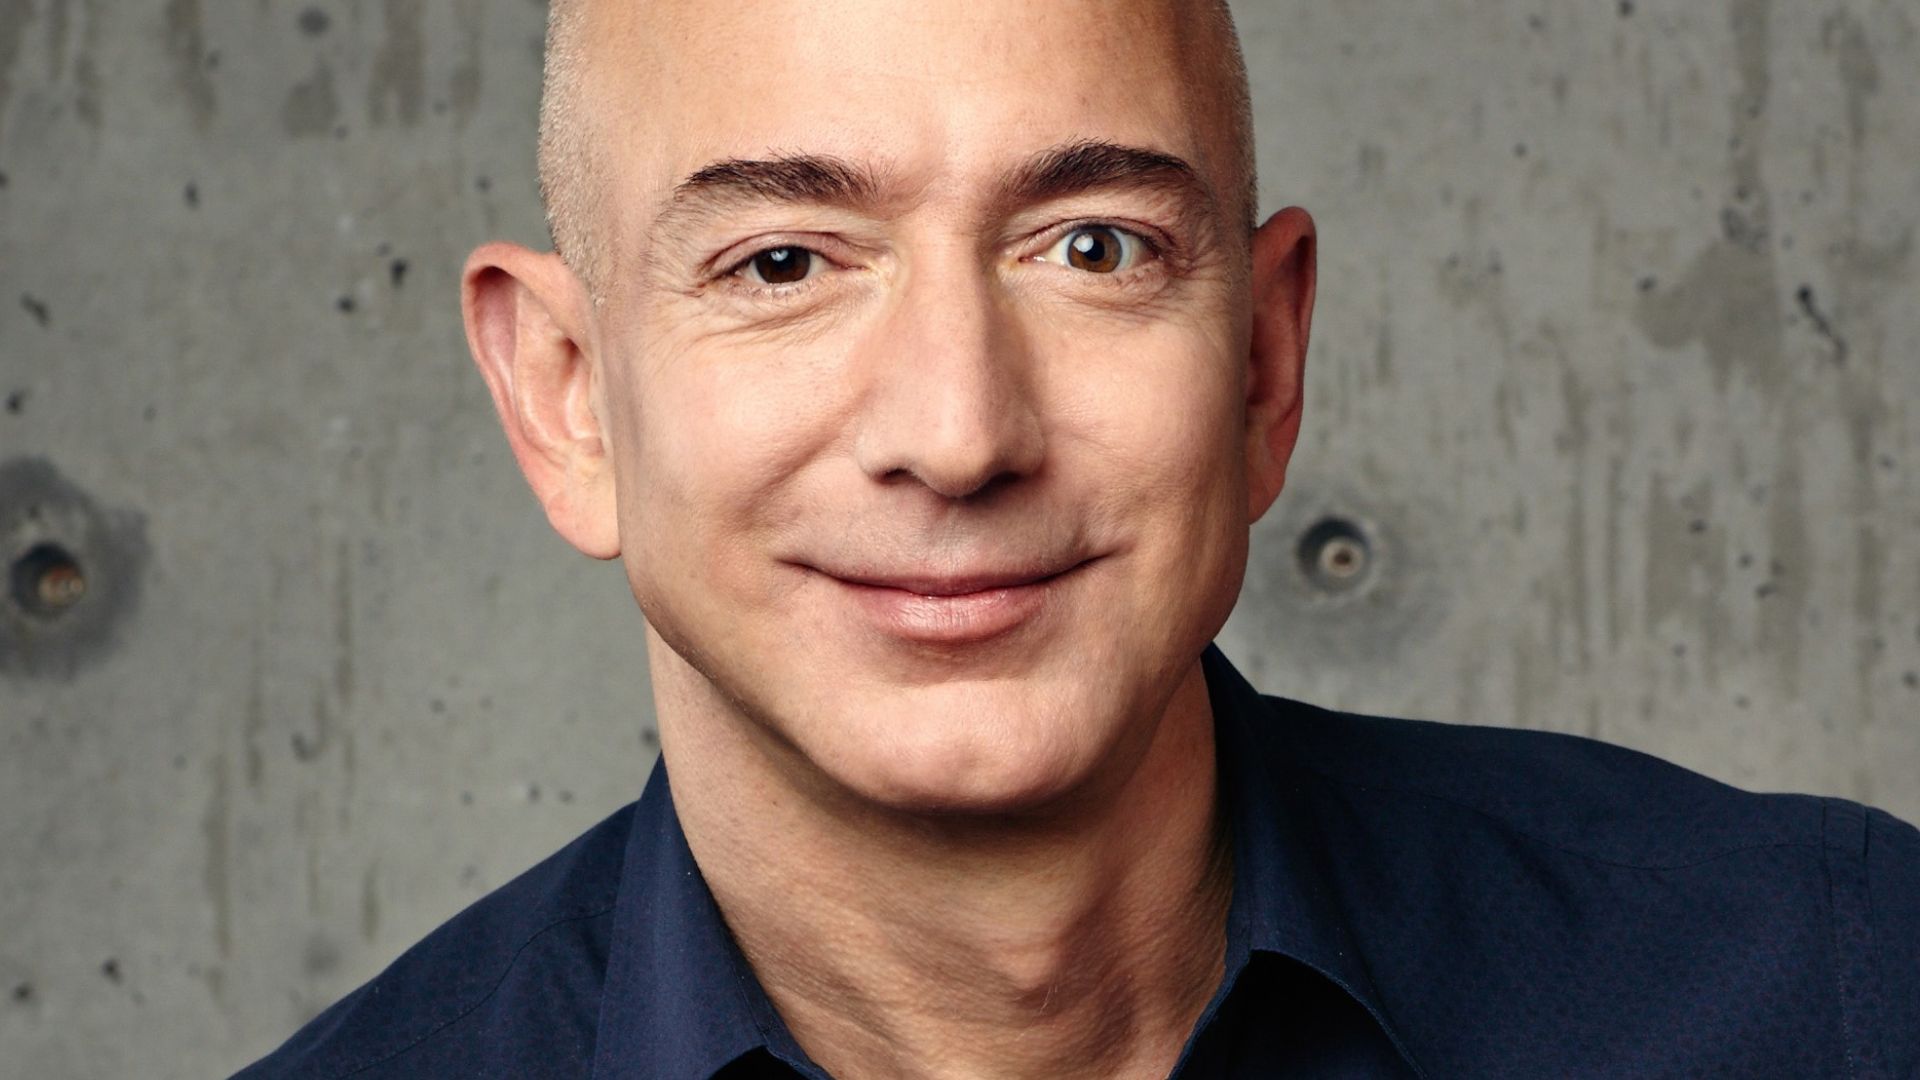 Jeff Bezos With A Smily Face